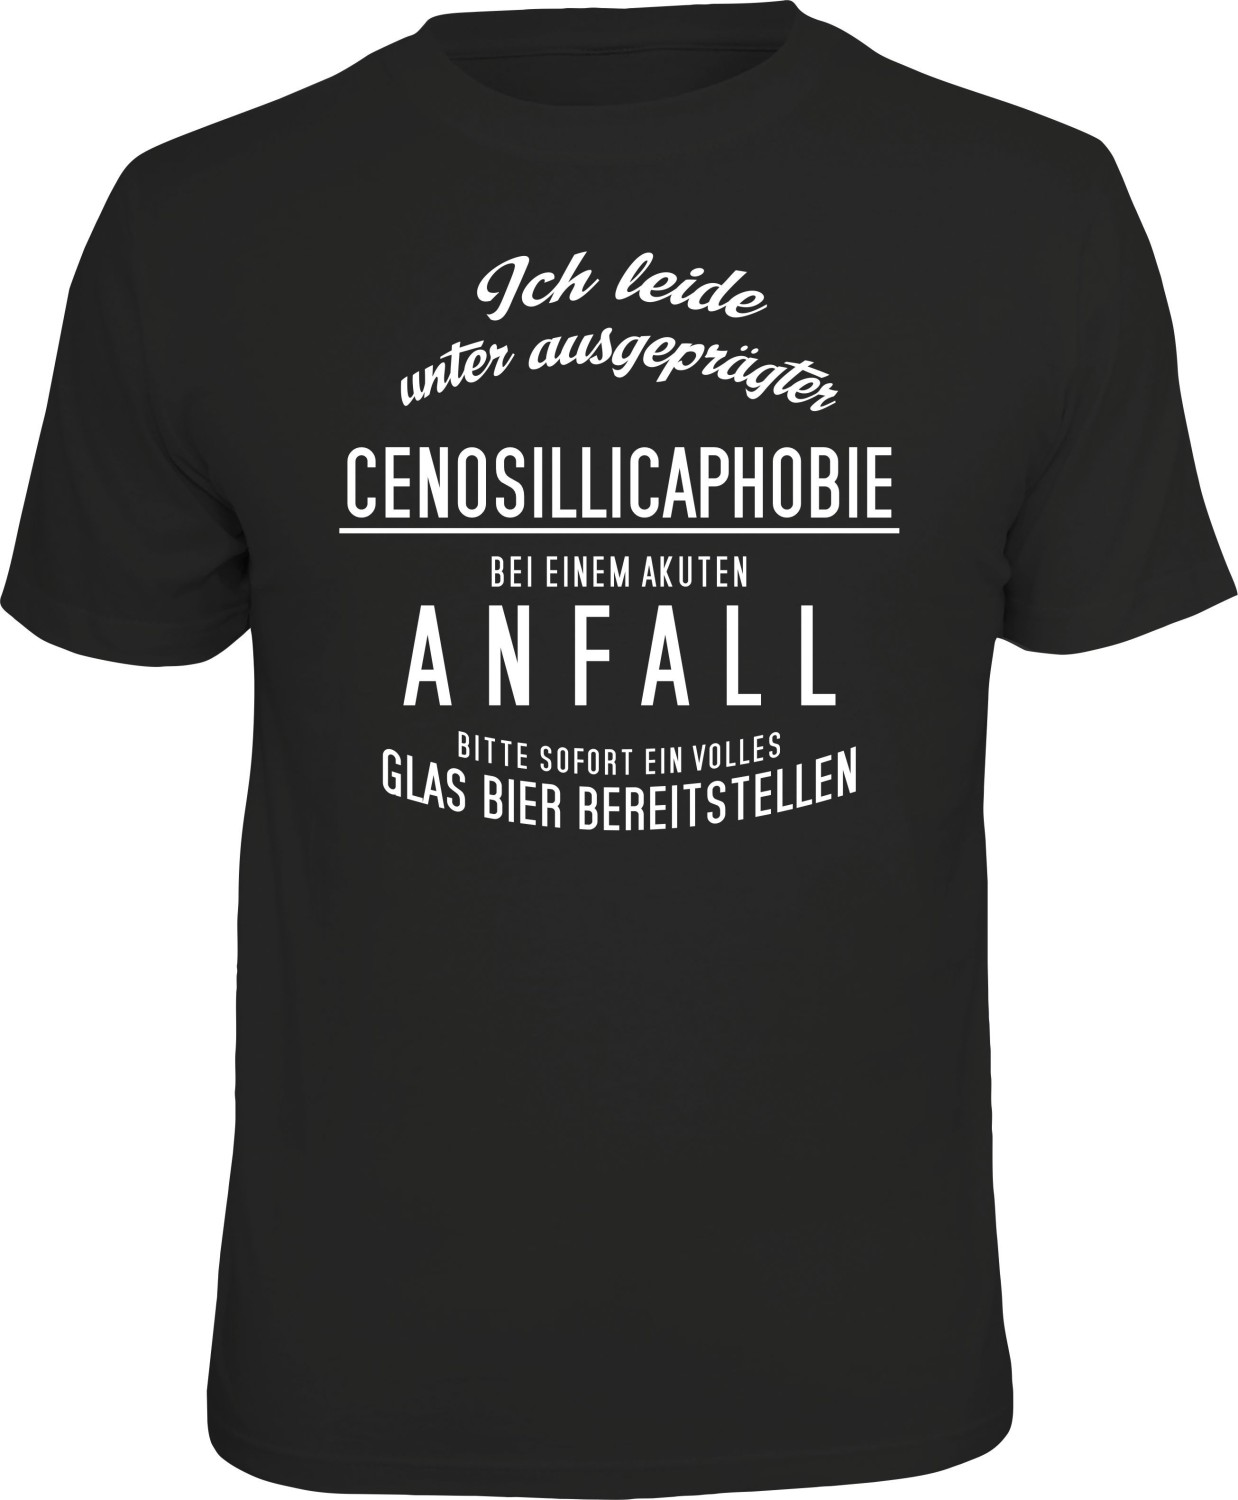 T-Shirt BEI EINEM ANFALL BIER BEREITSTELLEN